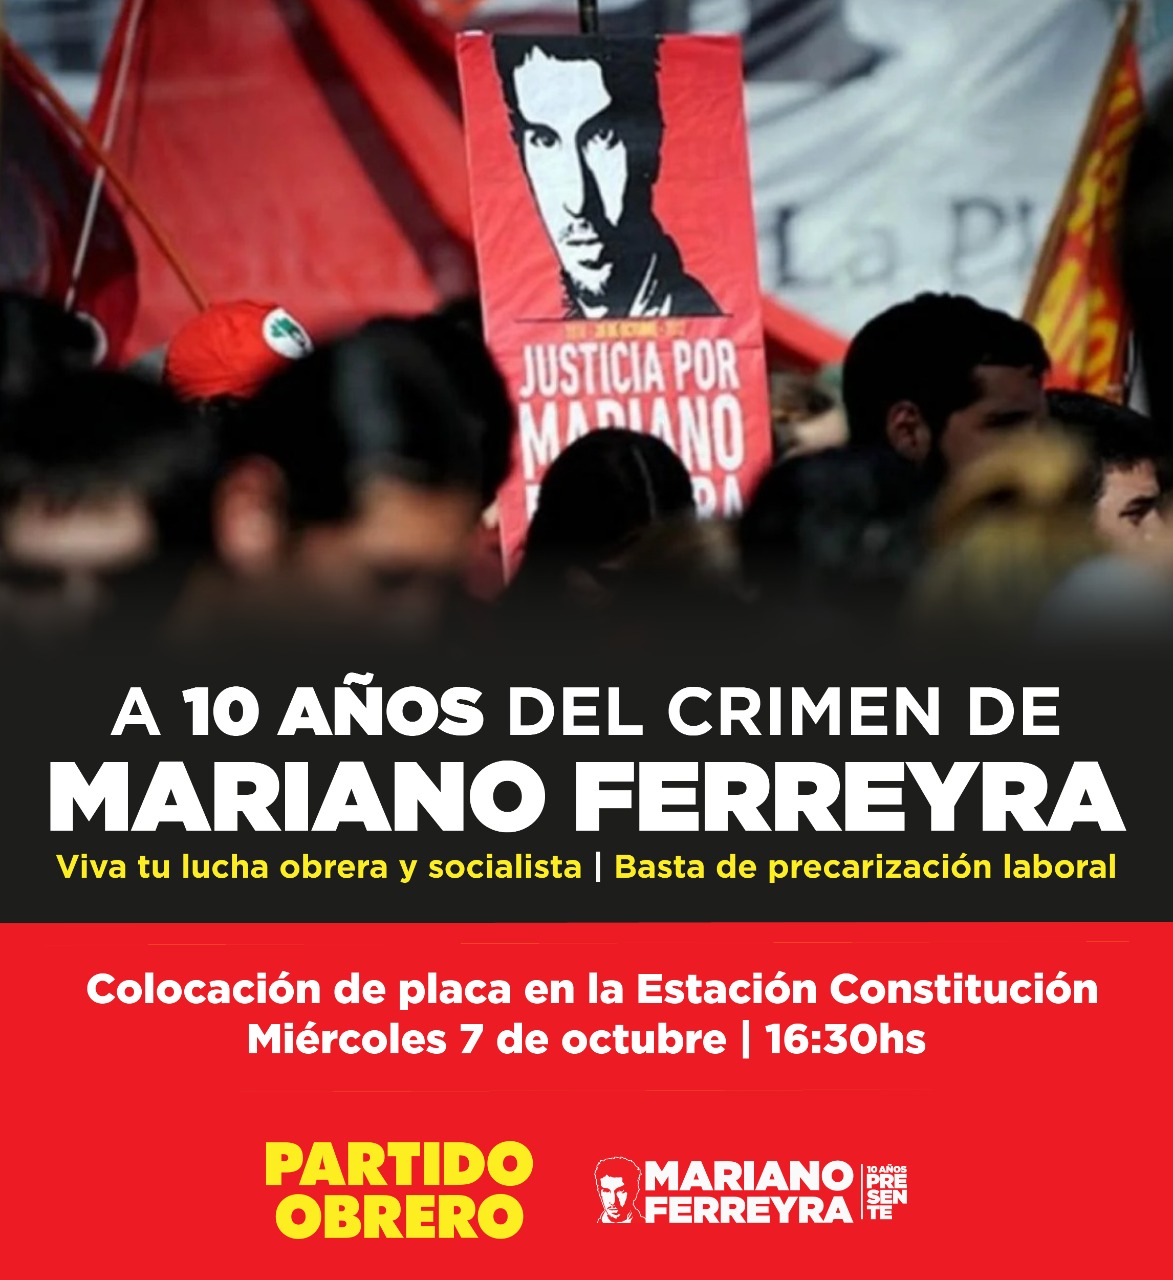 Acto y recolocación de placa en la Estación Constitución a 10 años del crimen de Mariano Ferreya